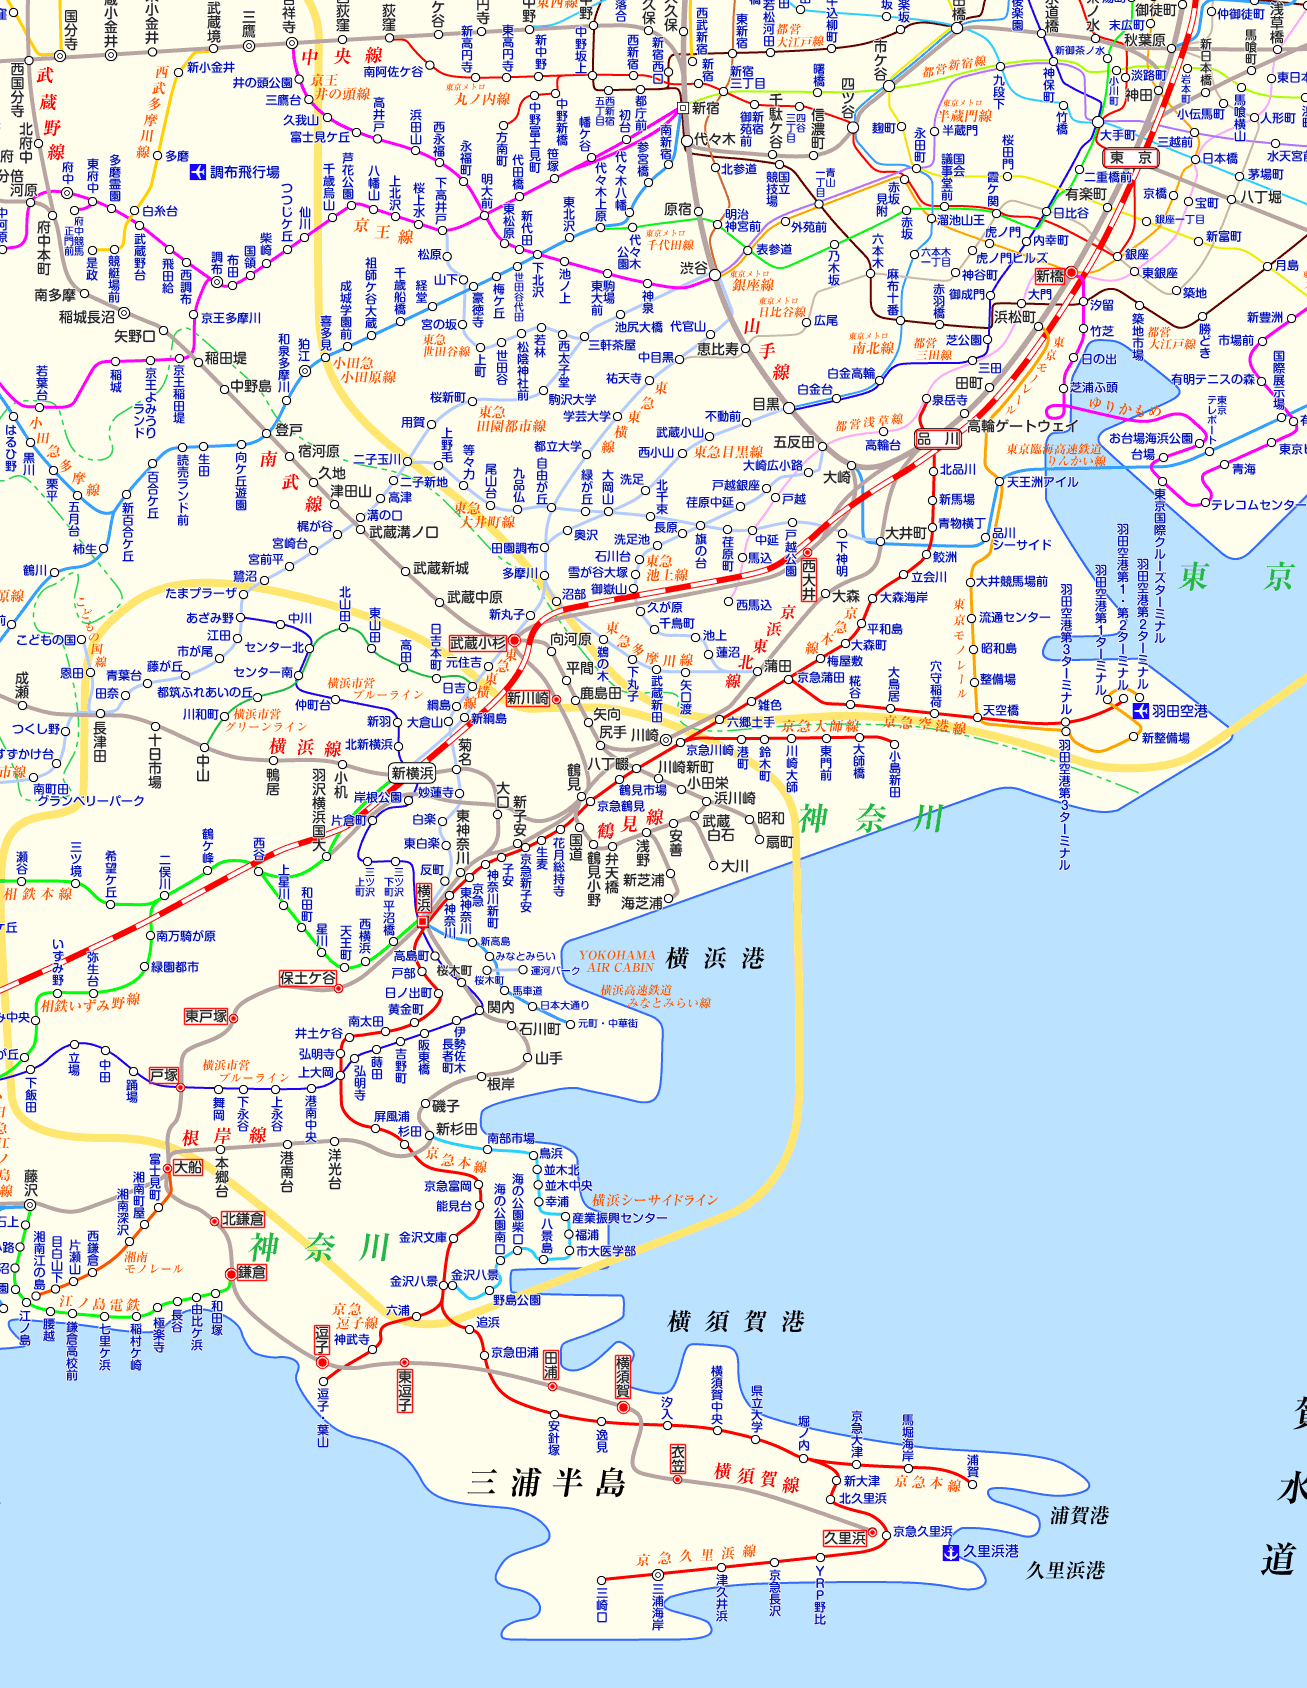 横須賀線 久里浜行きの路線図